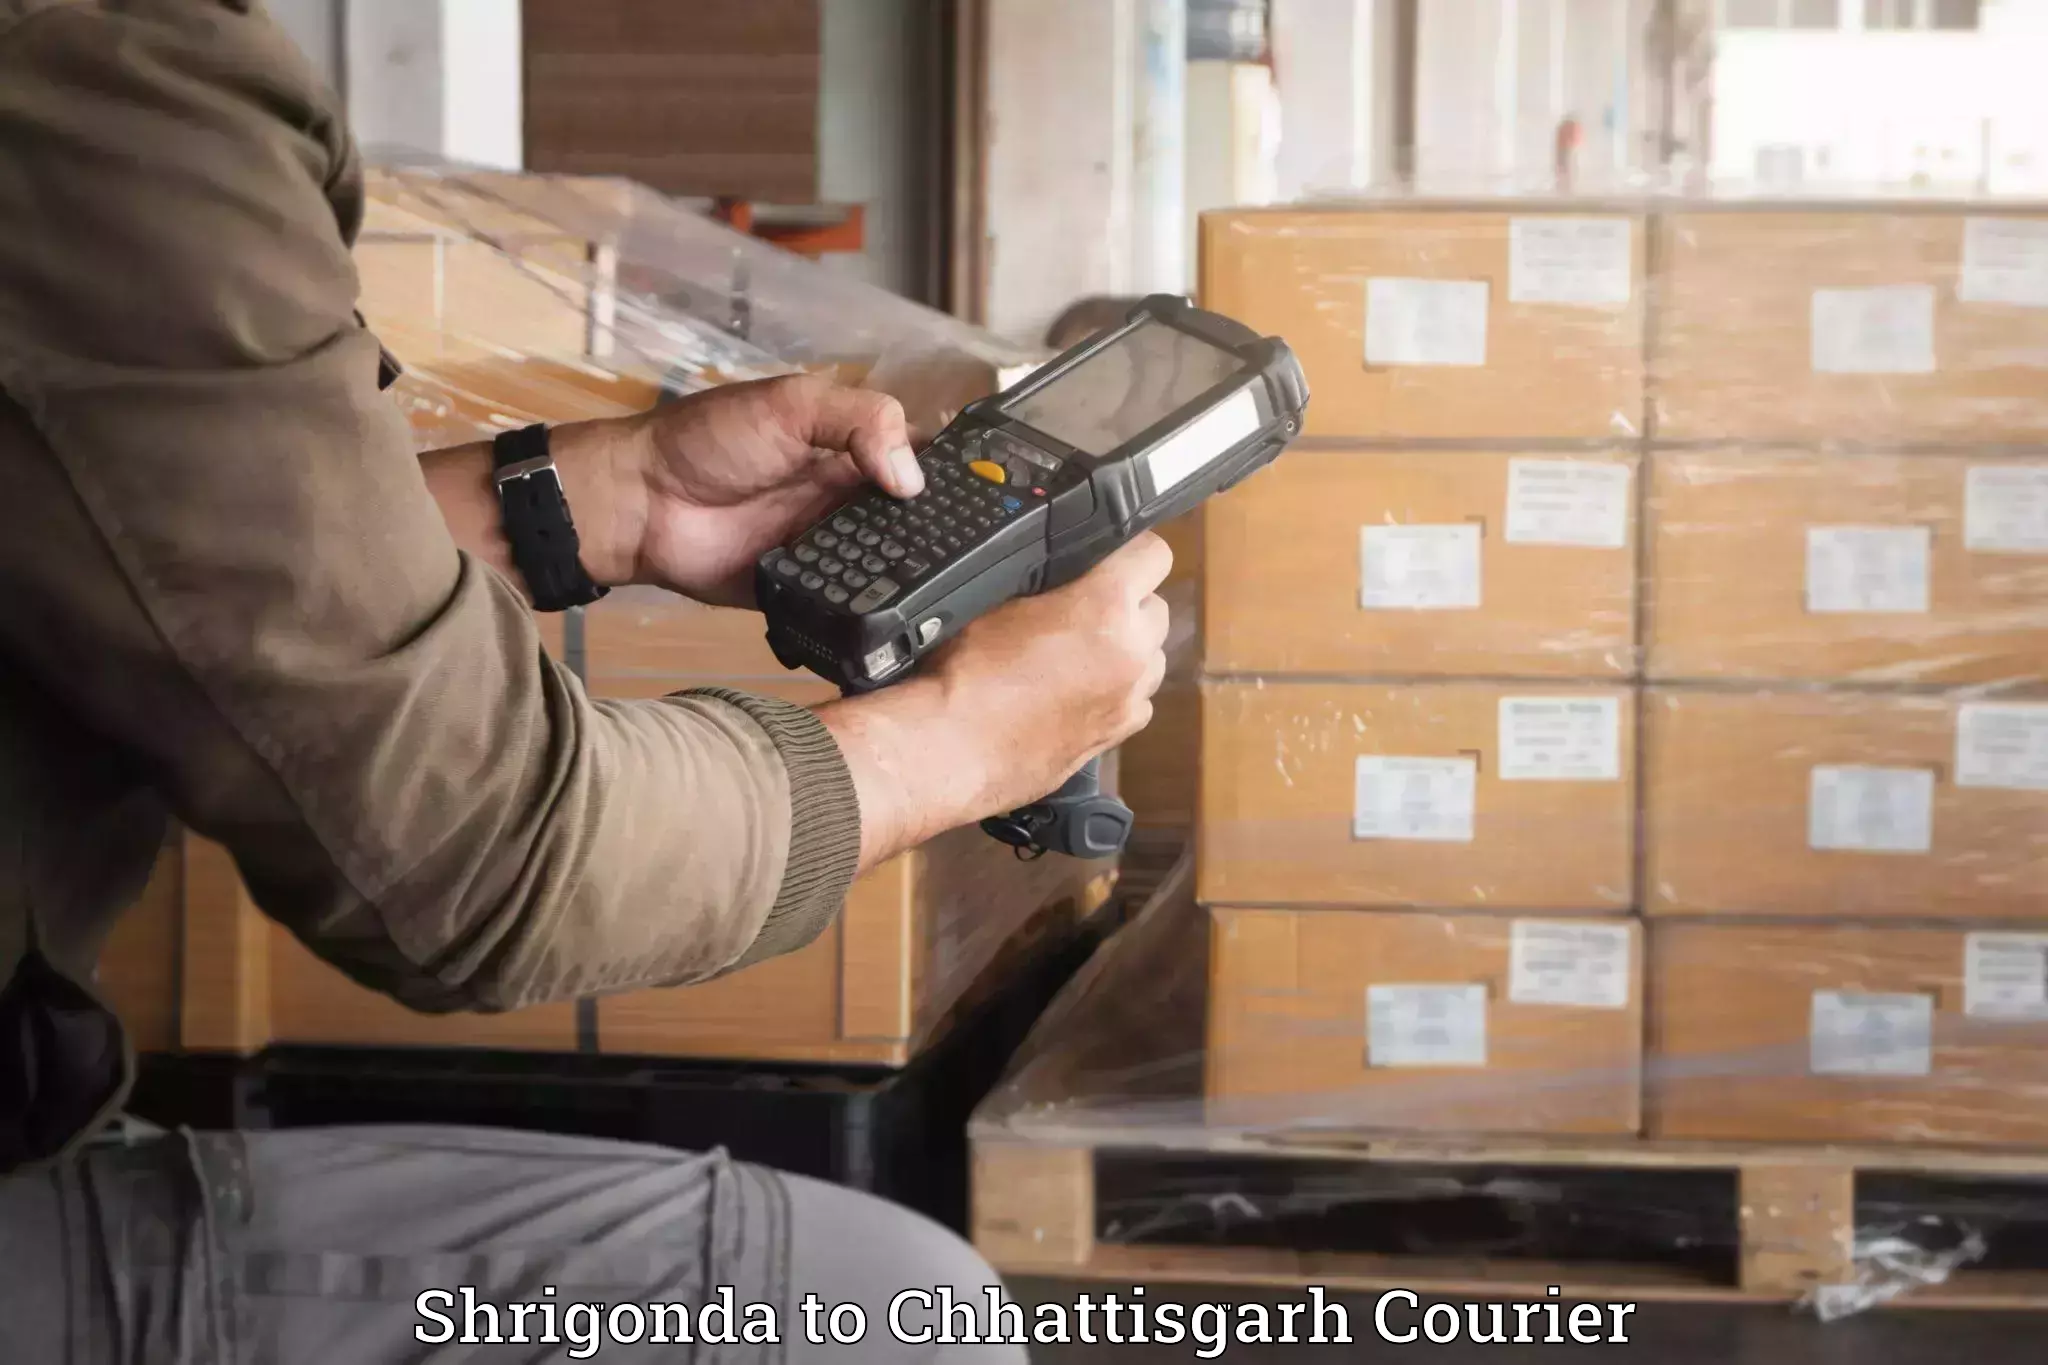 Luggage shipment tracking in Shrigonda to Chhattisgarh